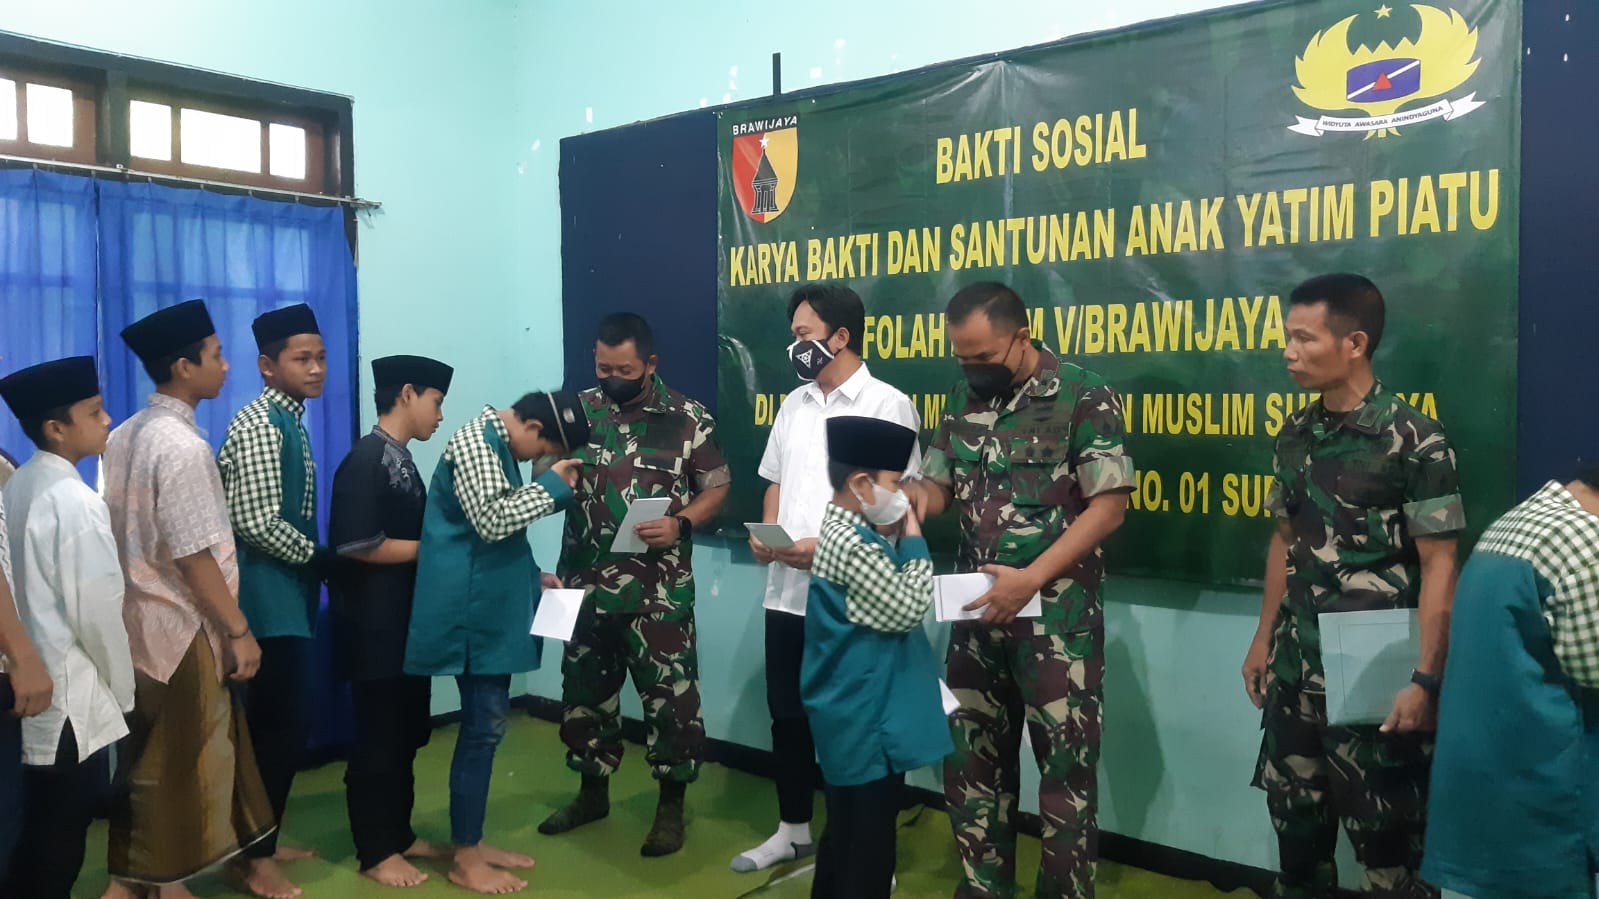 Jajaran Infolahtadam V/Brawijaya memberikan bantuan kepada anak yatim di panti asuhan muslim Surabaya